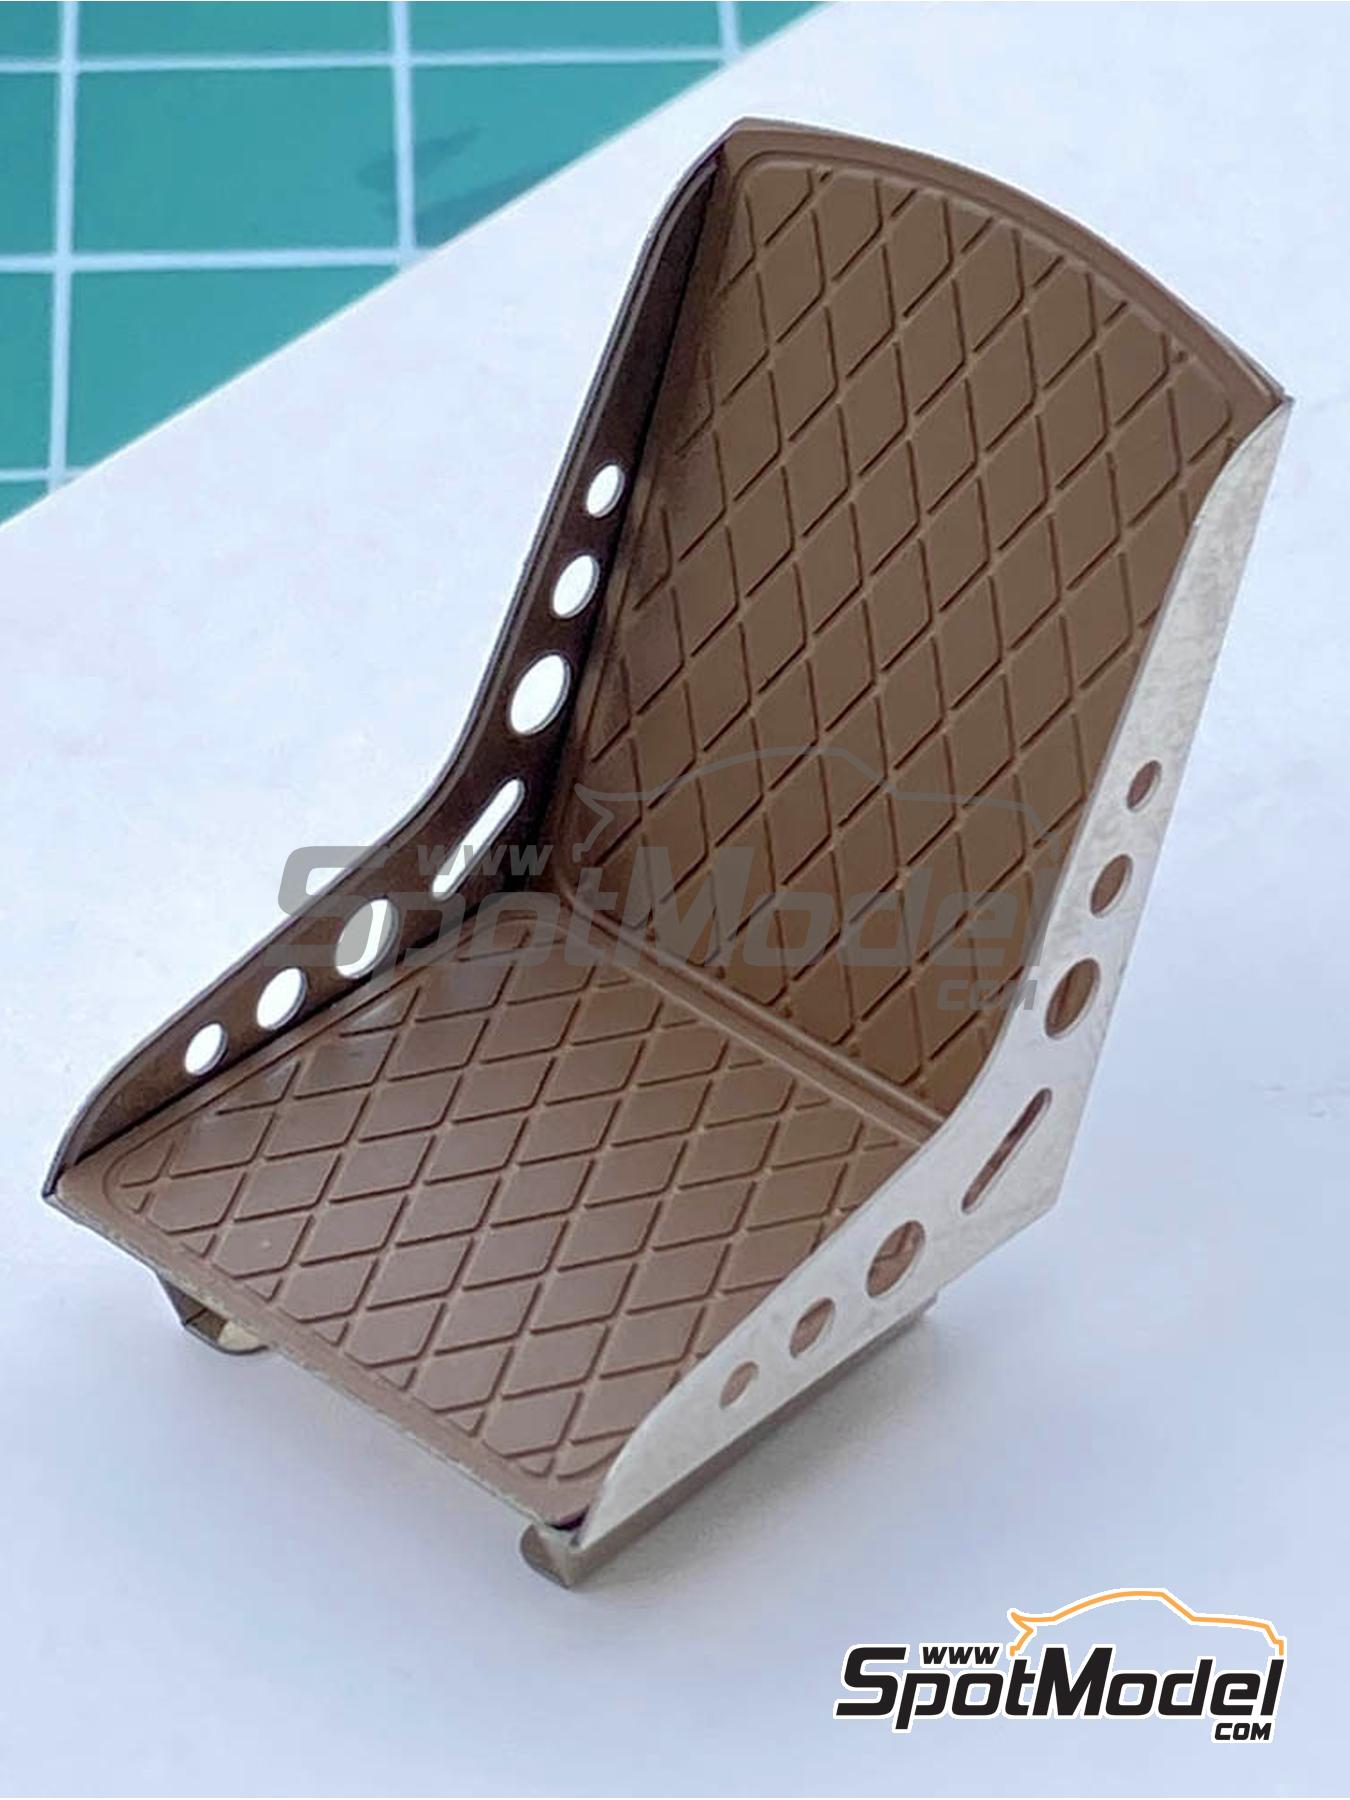 HME Folding Seat Cushion | HME Products